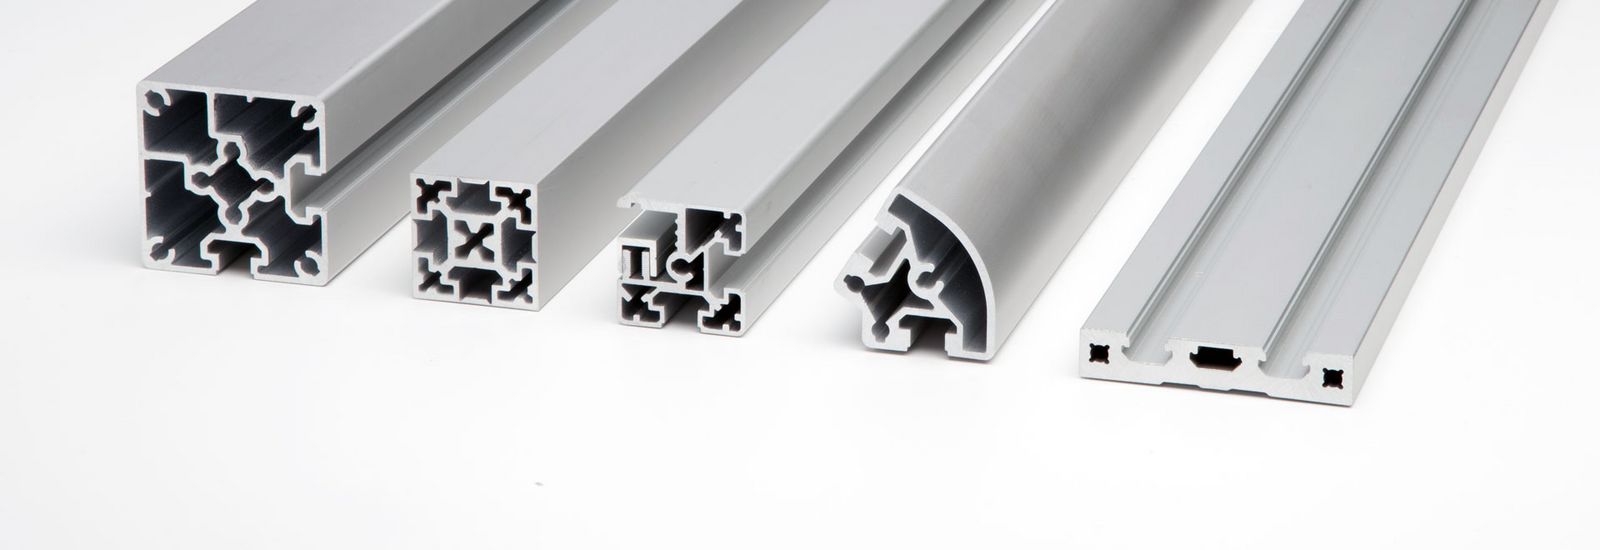 Imagen de ejemplo con presentación de los perfiles especiales de aluminio